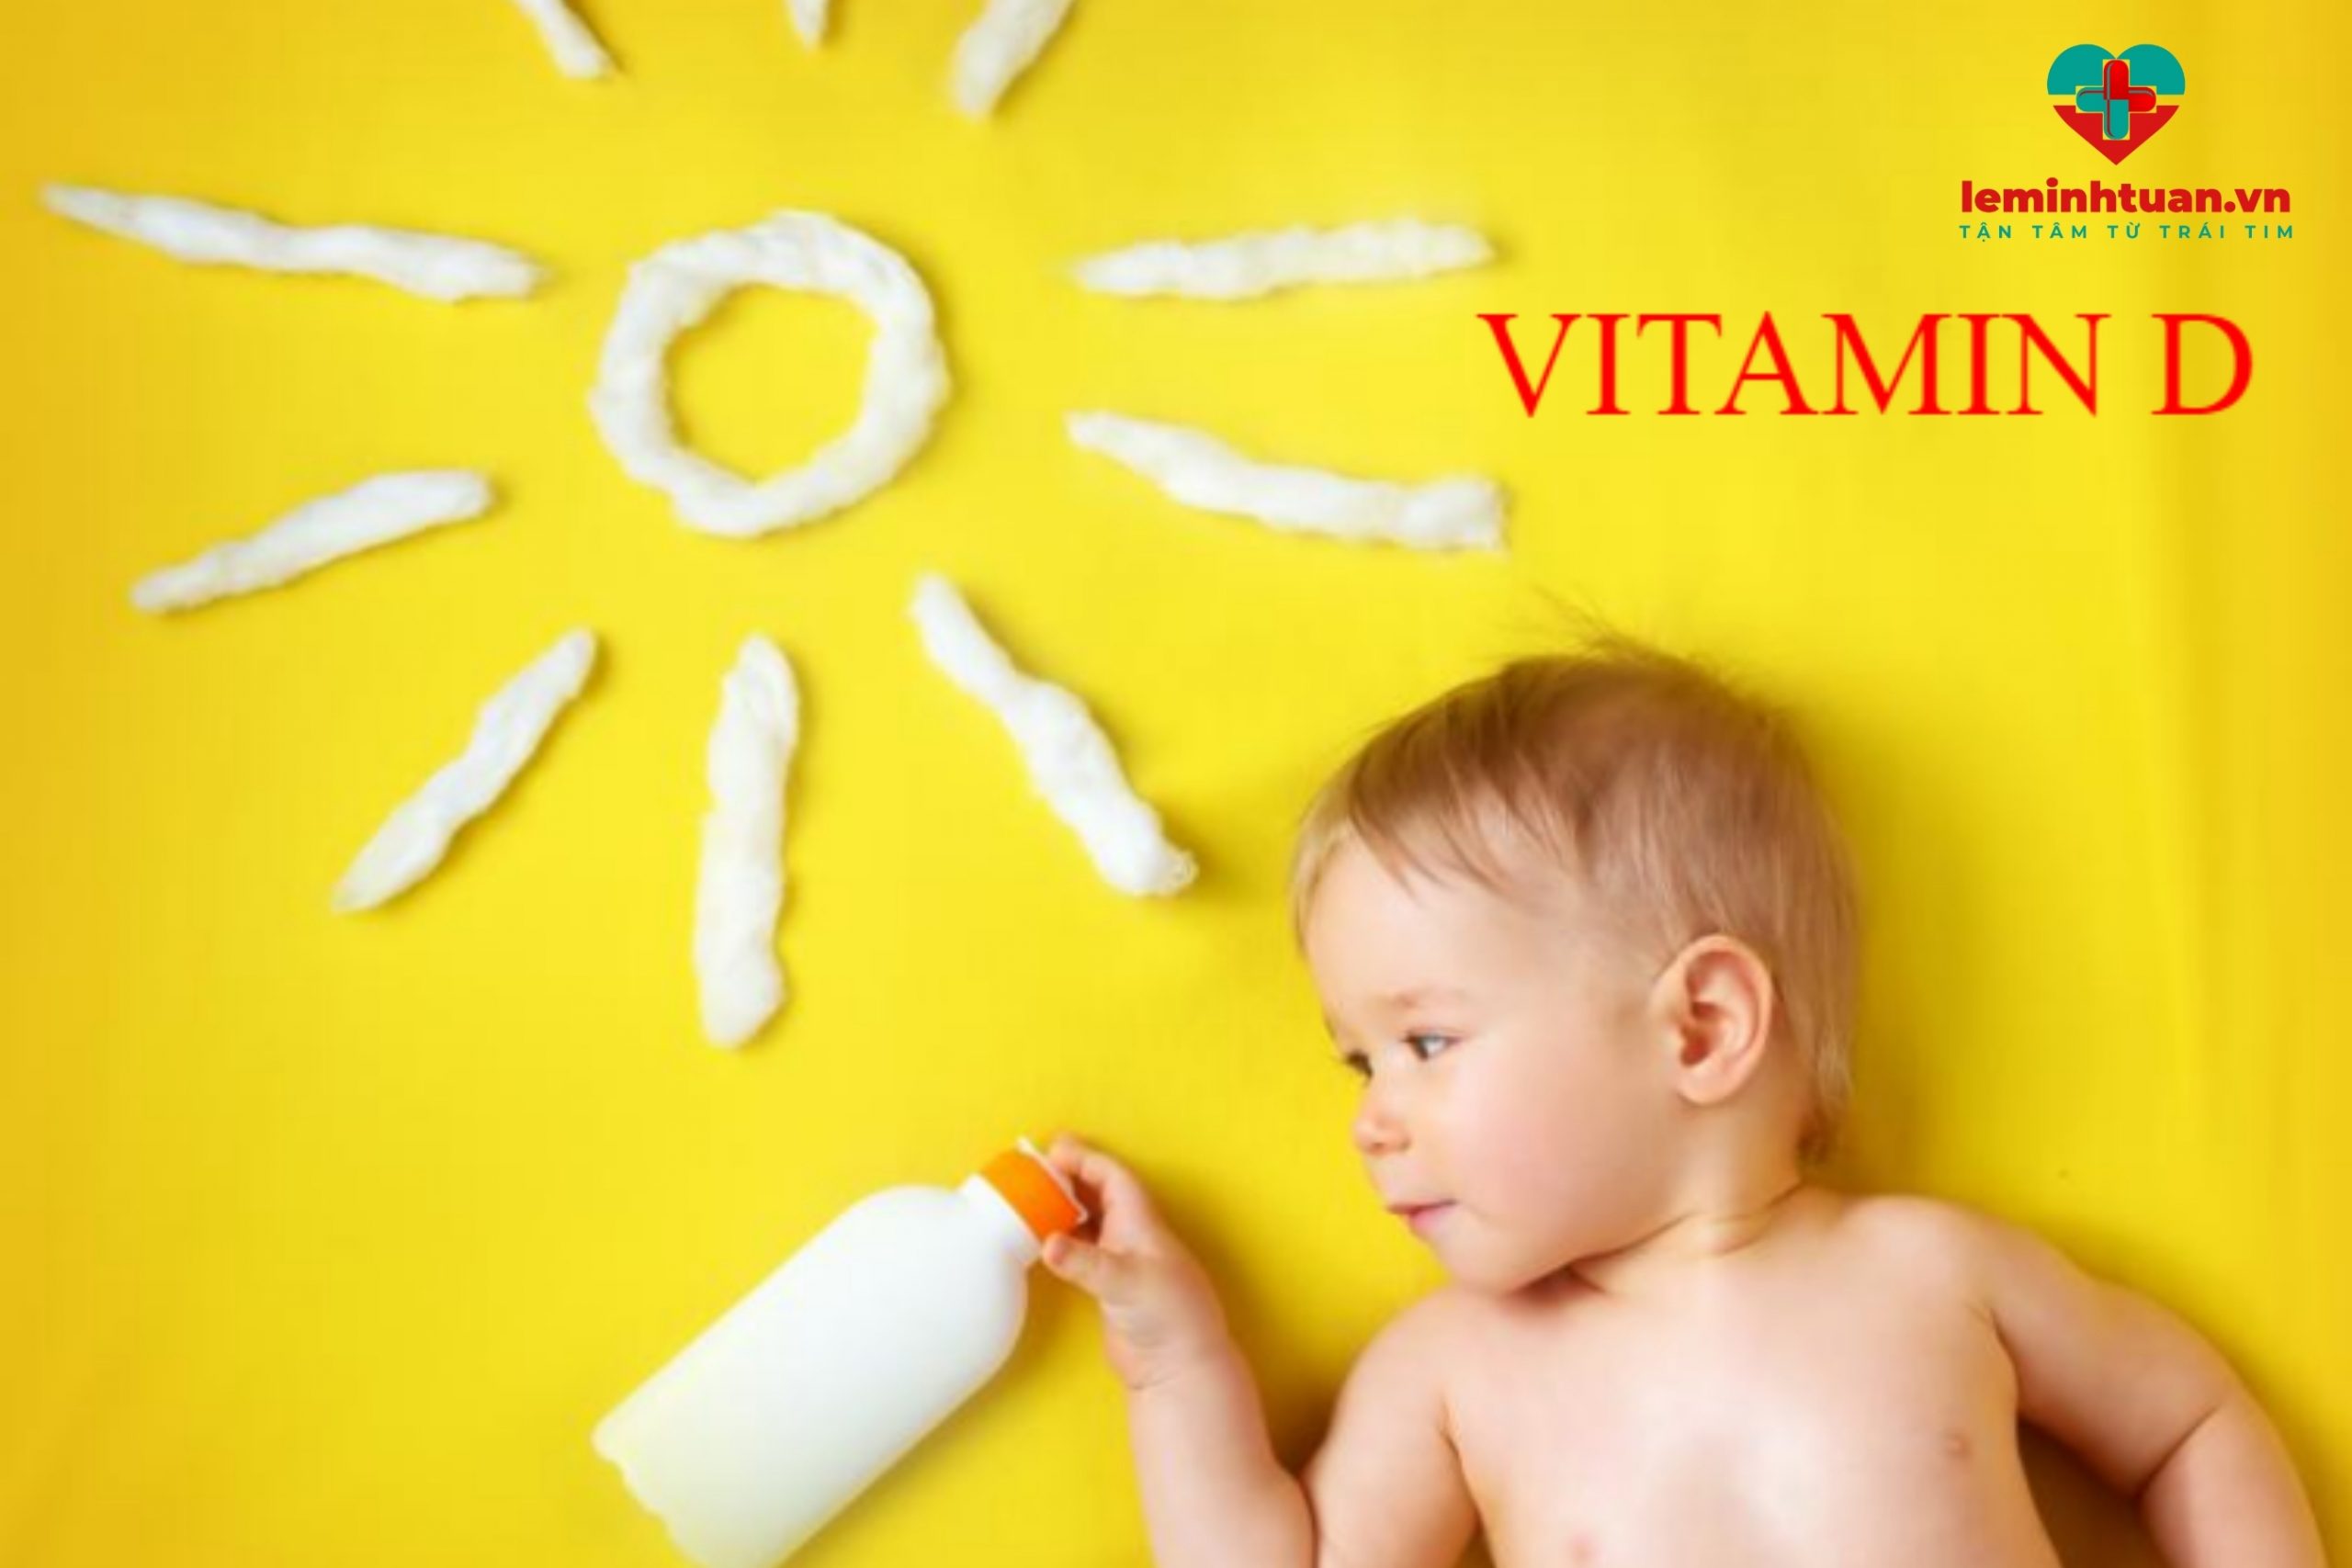 Thiếu vitamin D gây ra bệnh gì ở trẻ